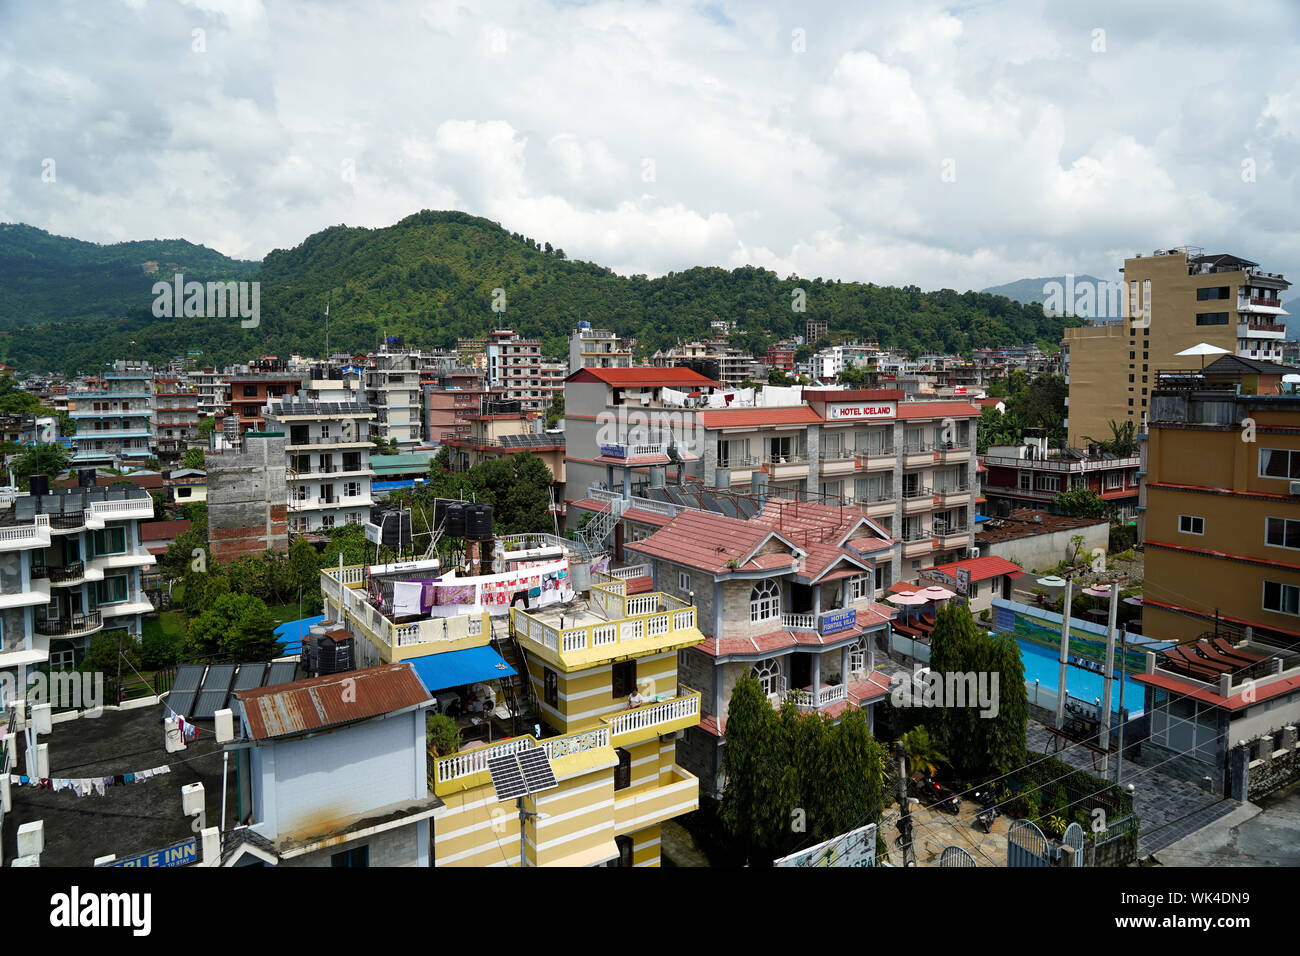 Népalais Pokhara : पोखरा une ville métropolitaine au Népal Asie du Sud Banque D'Images